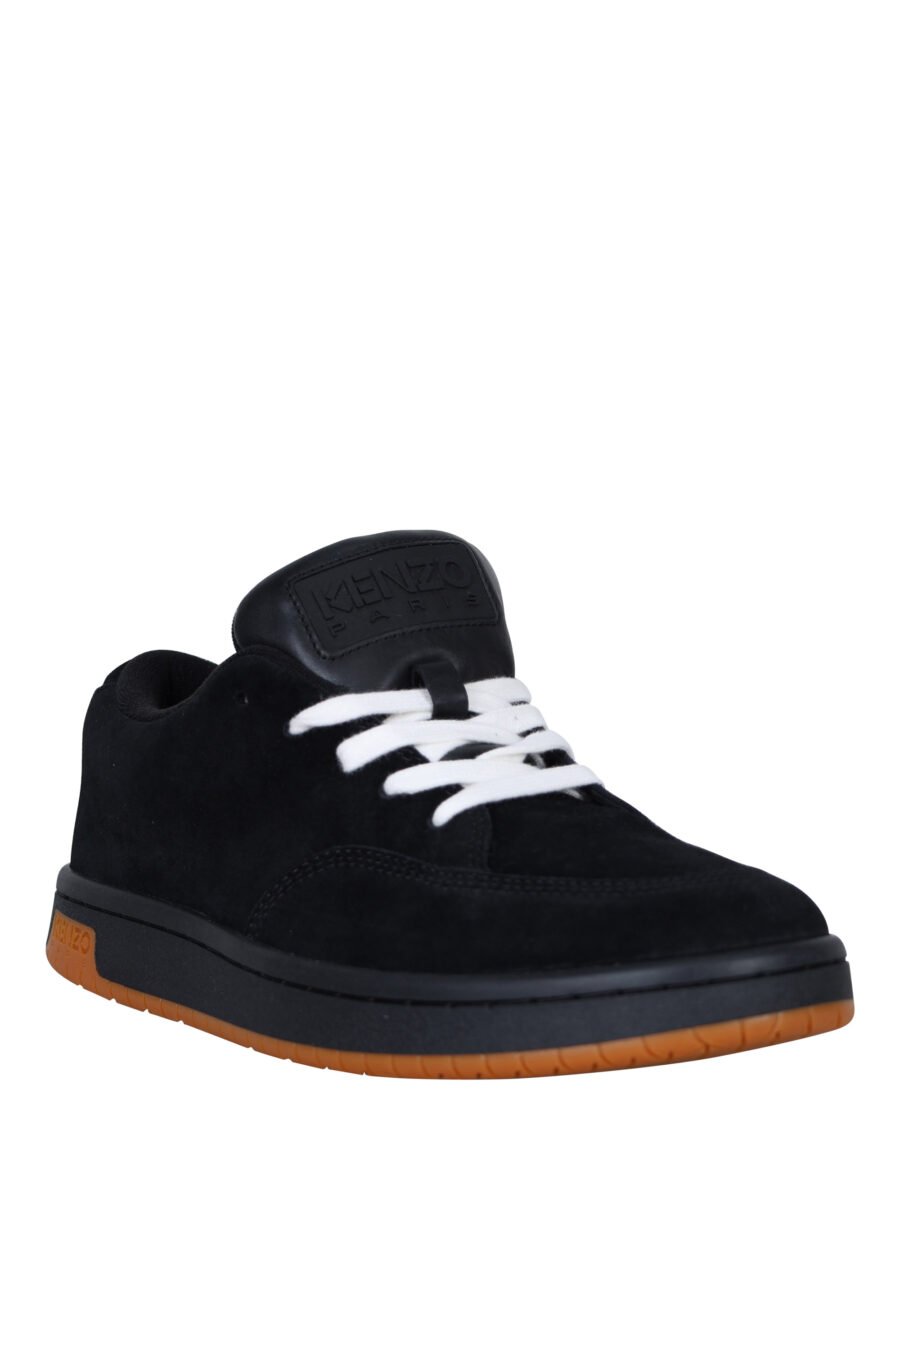 Zapatillas negras "kenzo dome" con minilogo y suela marrón - 3612230549111 1